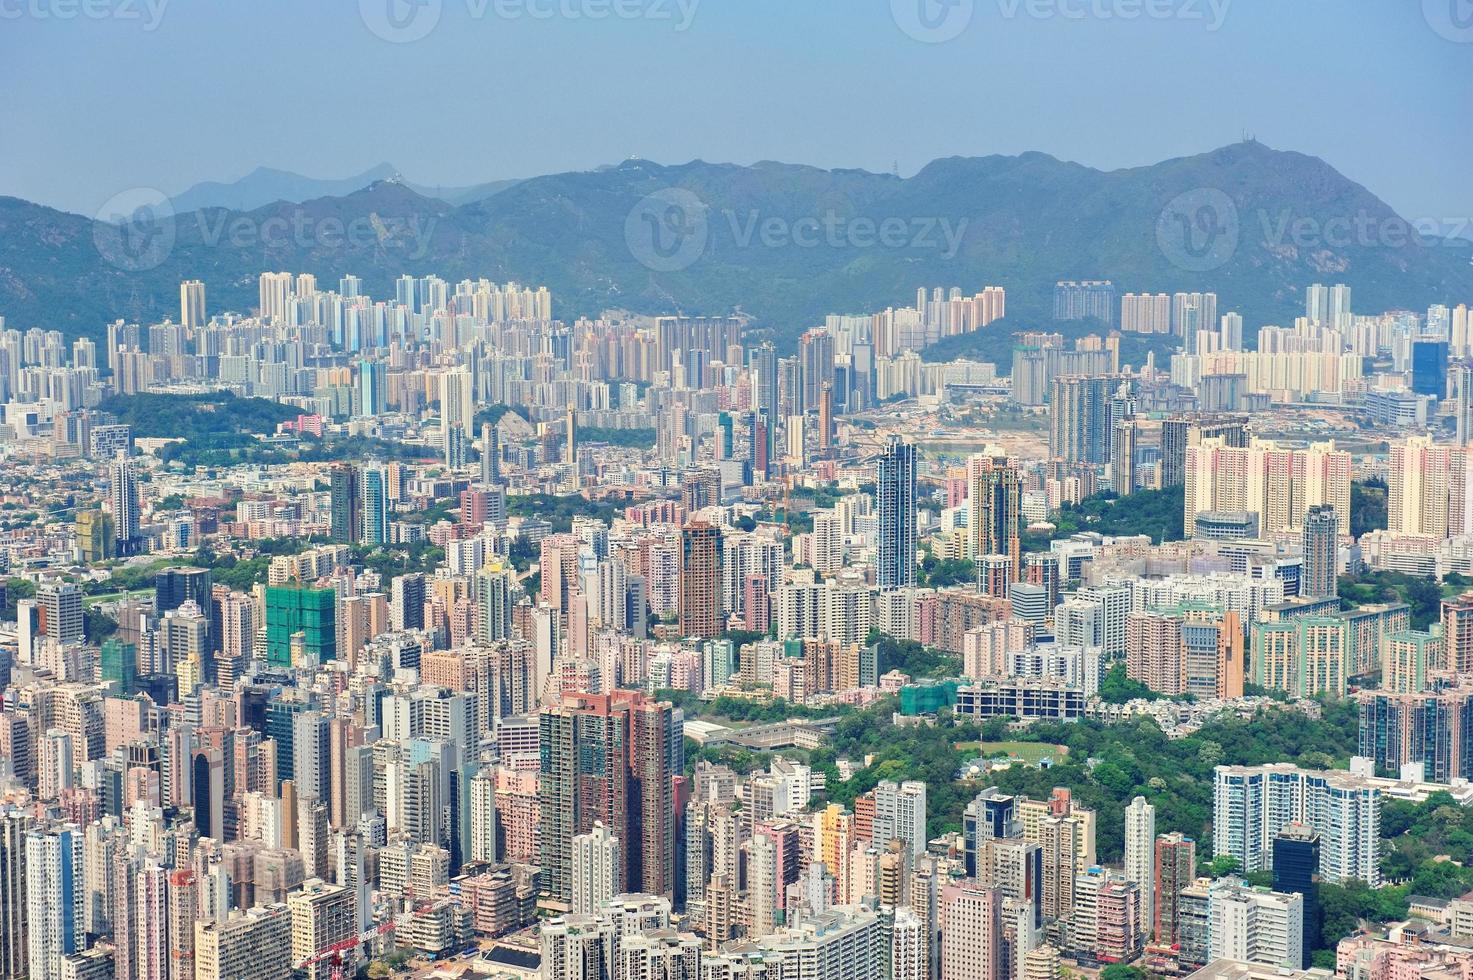 Hong Kong aerial photo